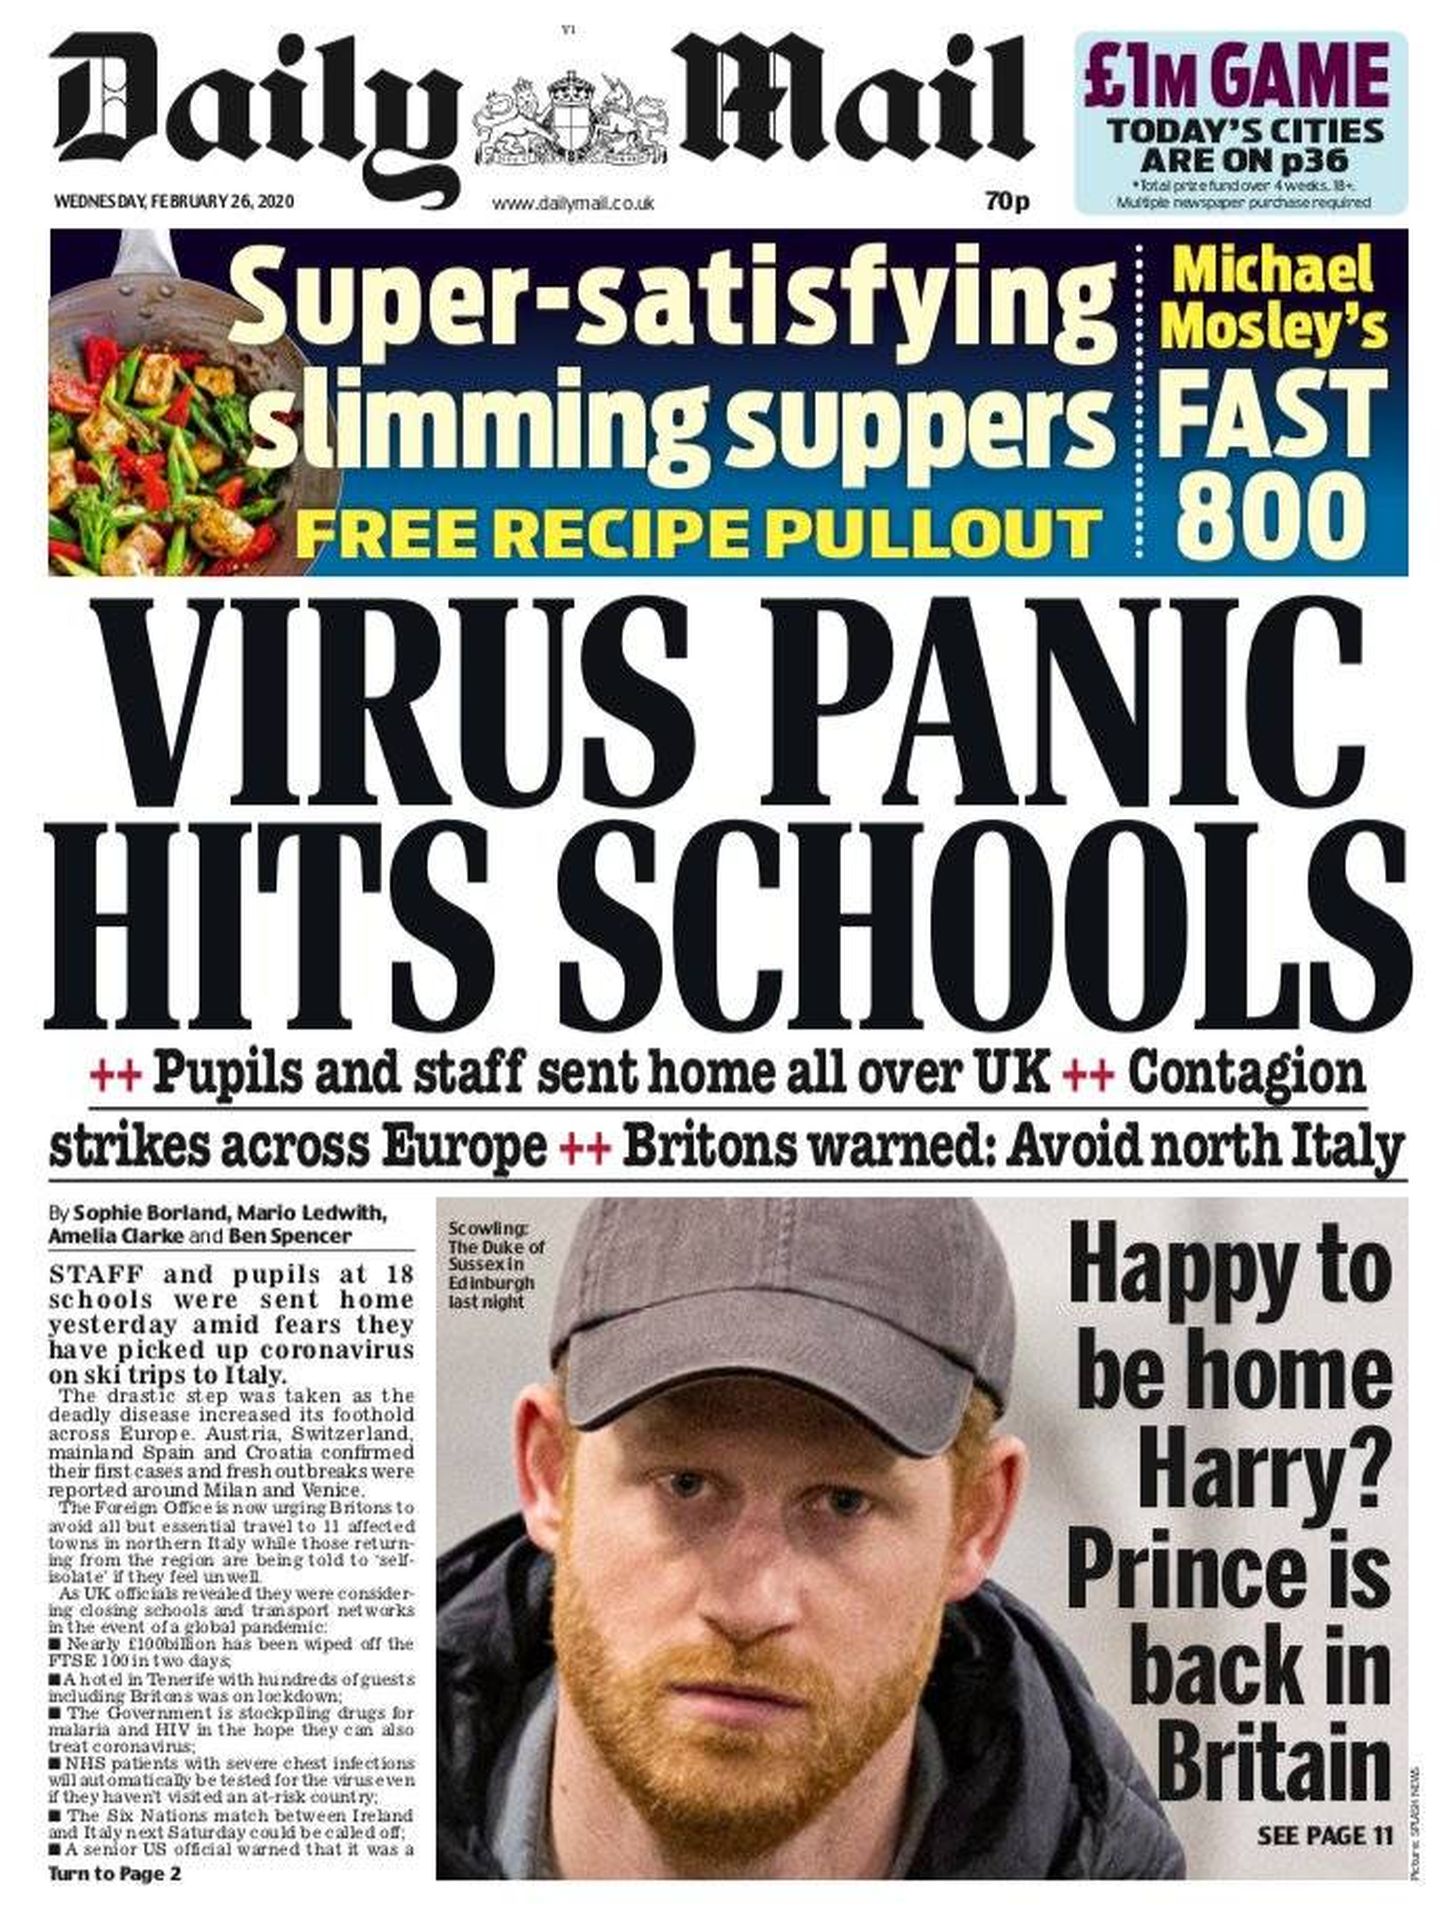 El príncipe Harry, en la portada del 'Daily Mail', a su llegada a Edimburgo.